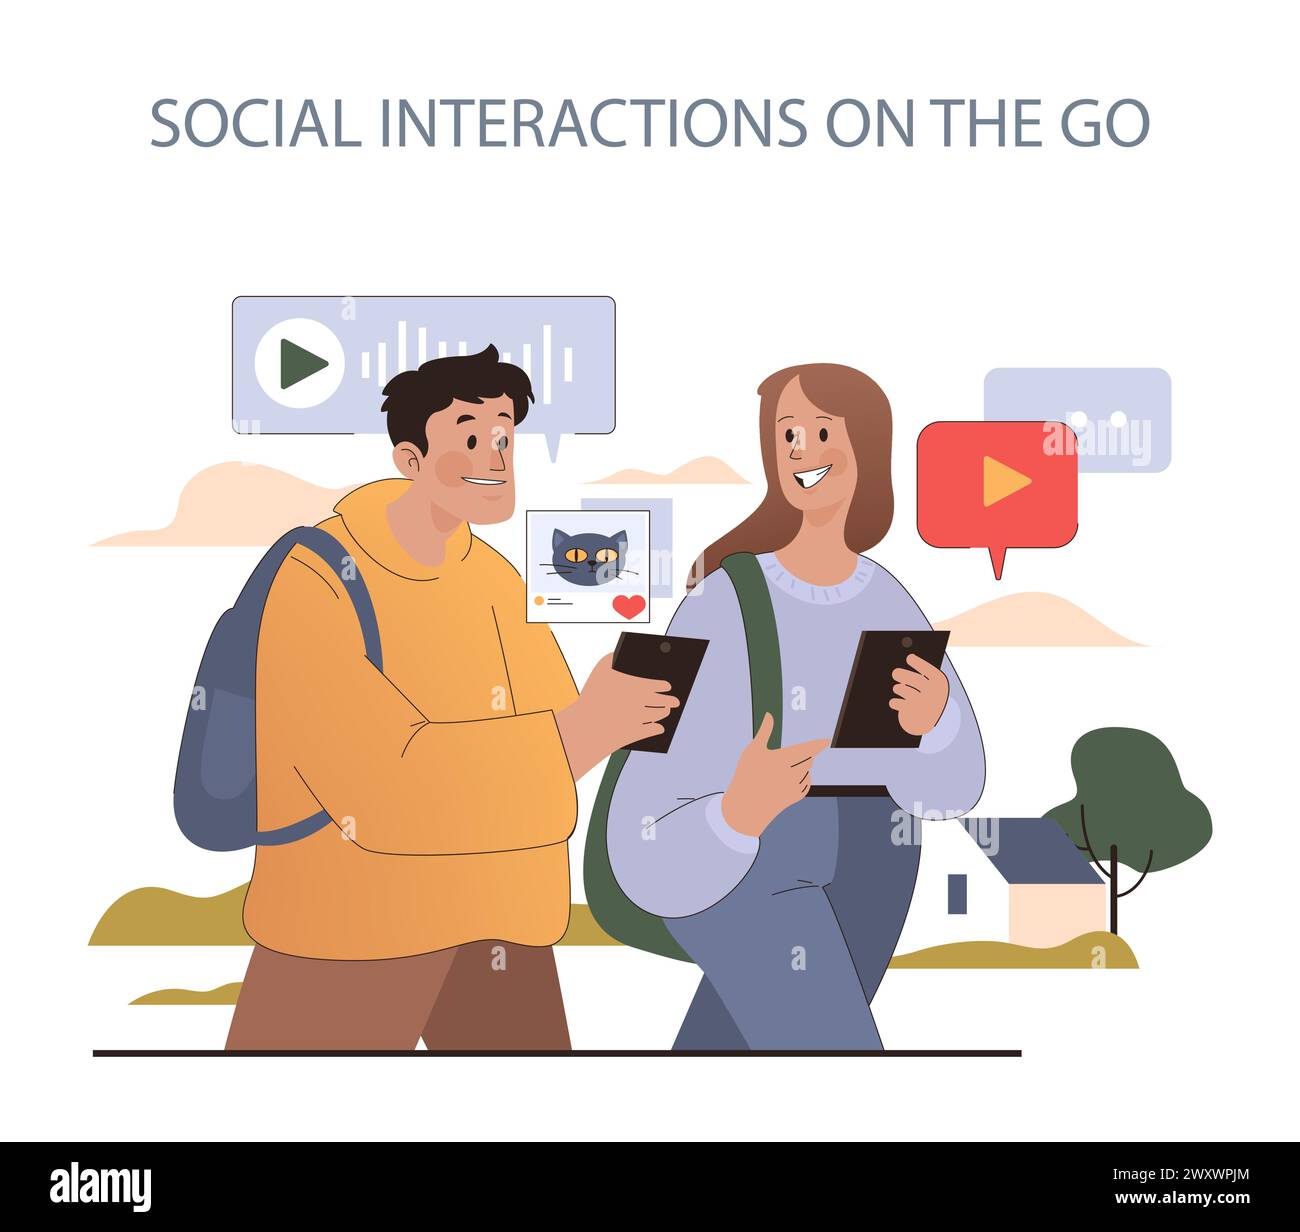 Concetto di interazioni sociali in movimento. I giovani condividono contenuti e si connettono digitalmente mentre si divertono nella vita all'aria aperta della città. Coinvolgimento dei social media senza interruzioni. Illustrazione Vettoriale